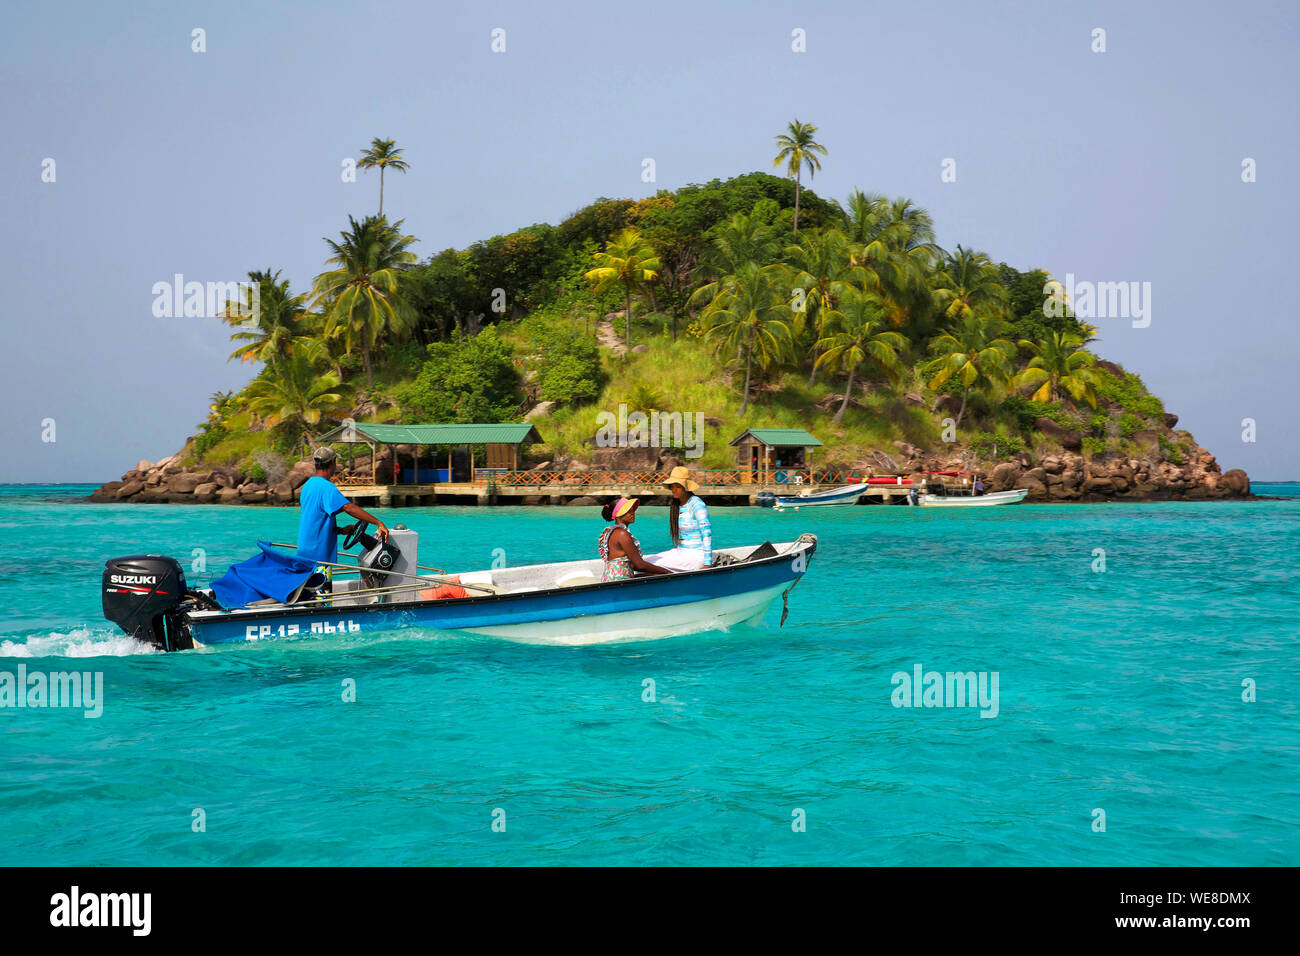 Colombia, Providencia Island, Cayo Cangrejo, islet in the Caribbean Sea Stock Photo